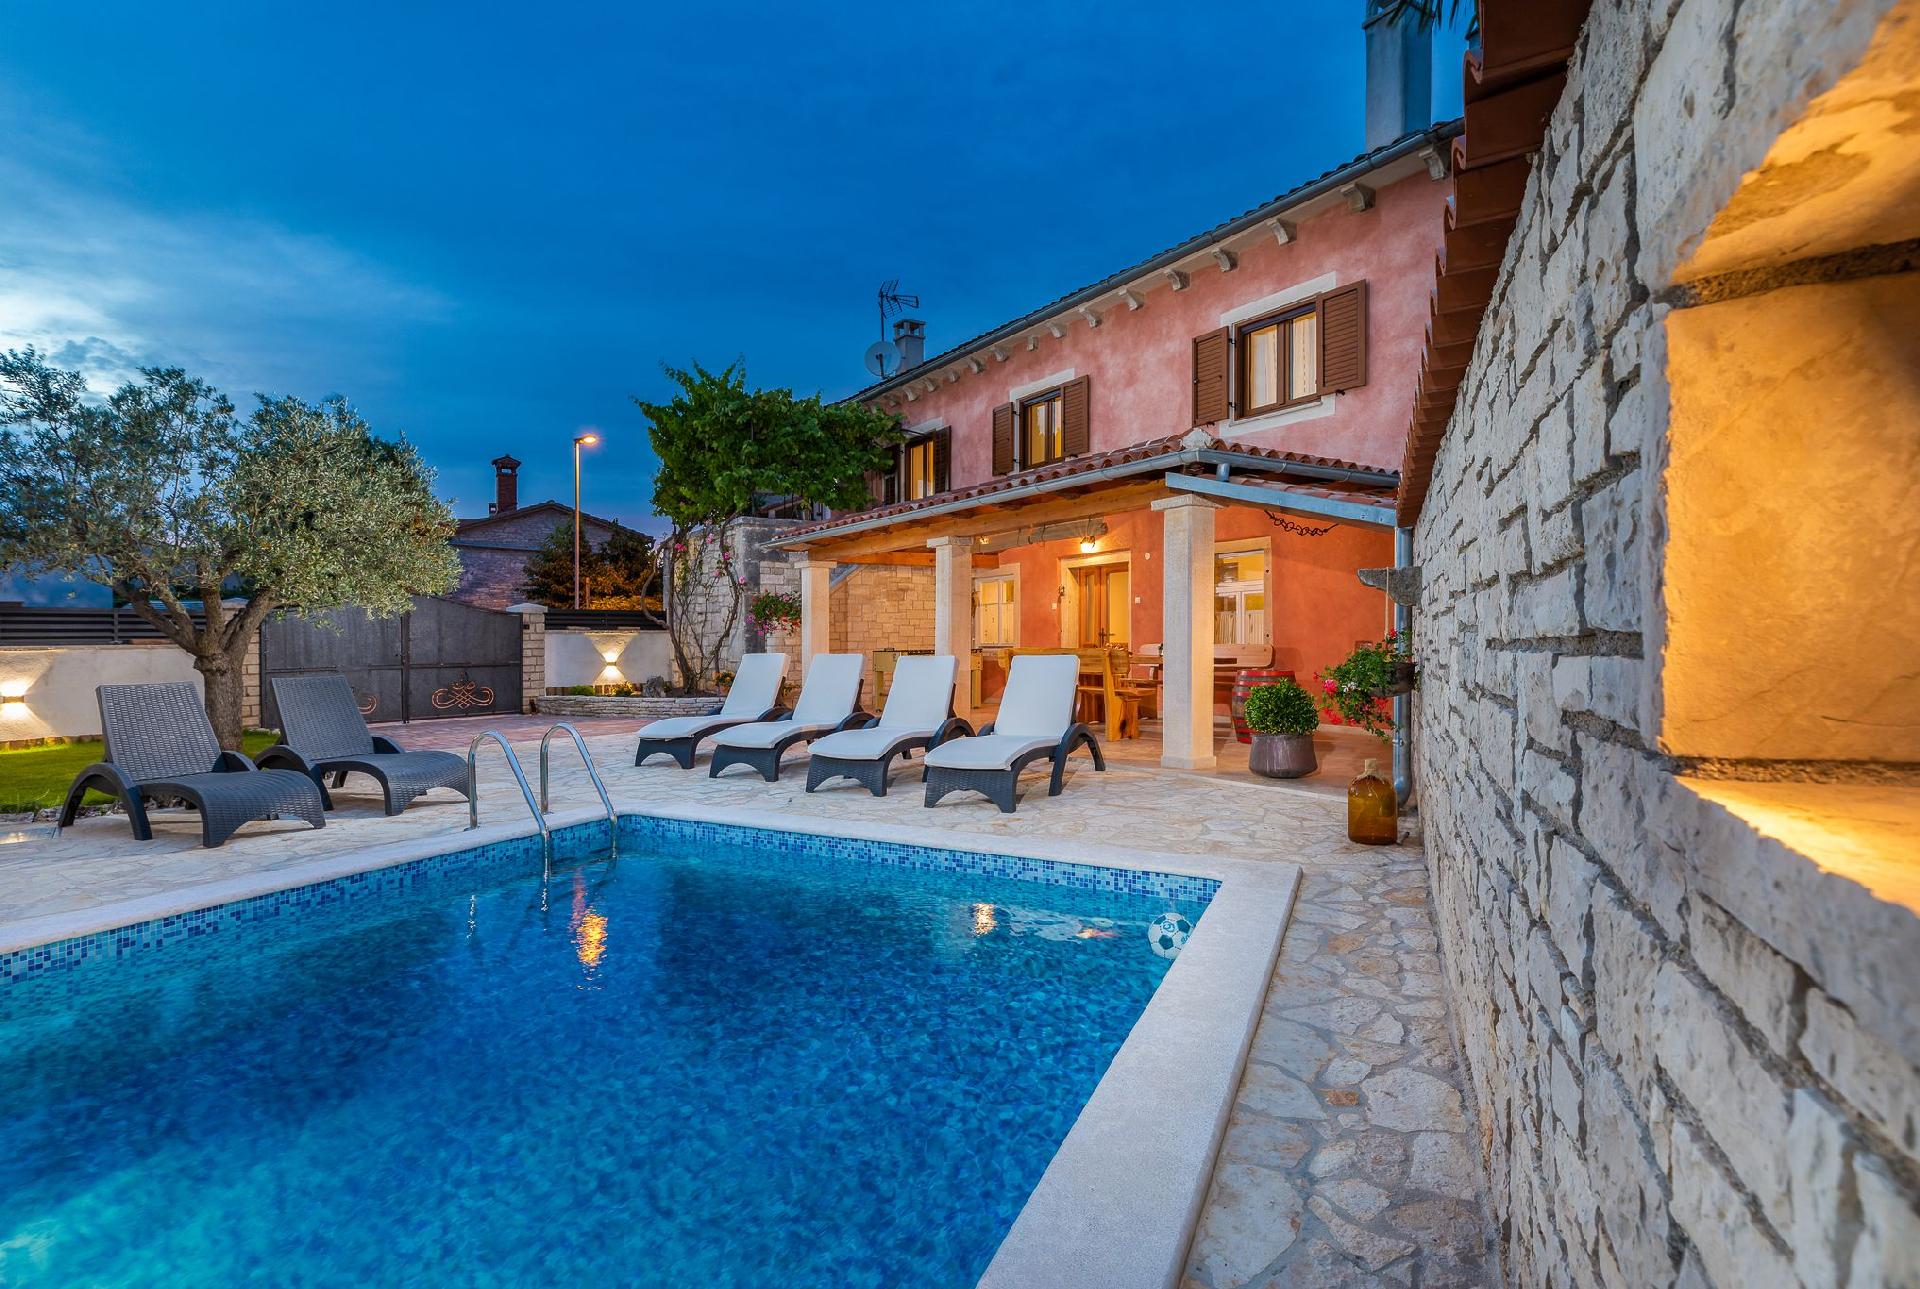 Casa Bepi - Ferienhaus mit Pool in ruhiger Lage in Ferienhaus in Kroatien